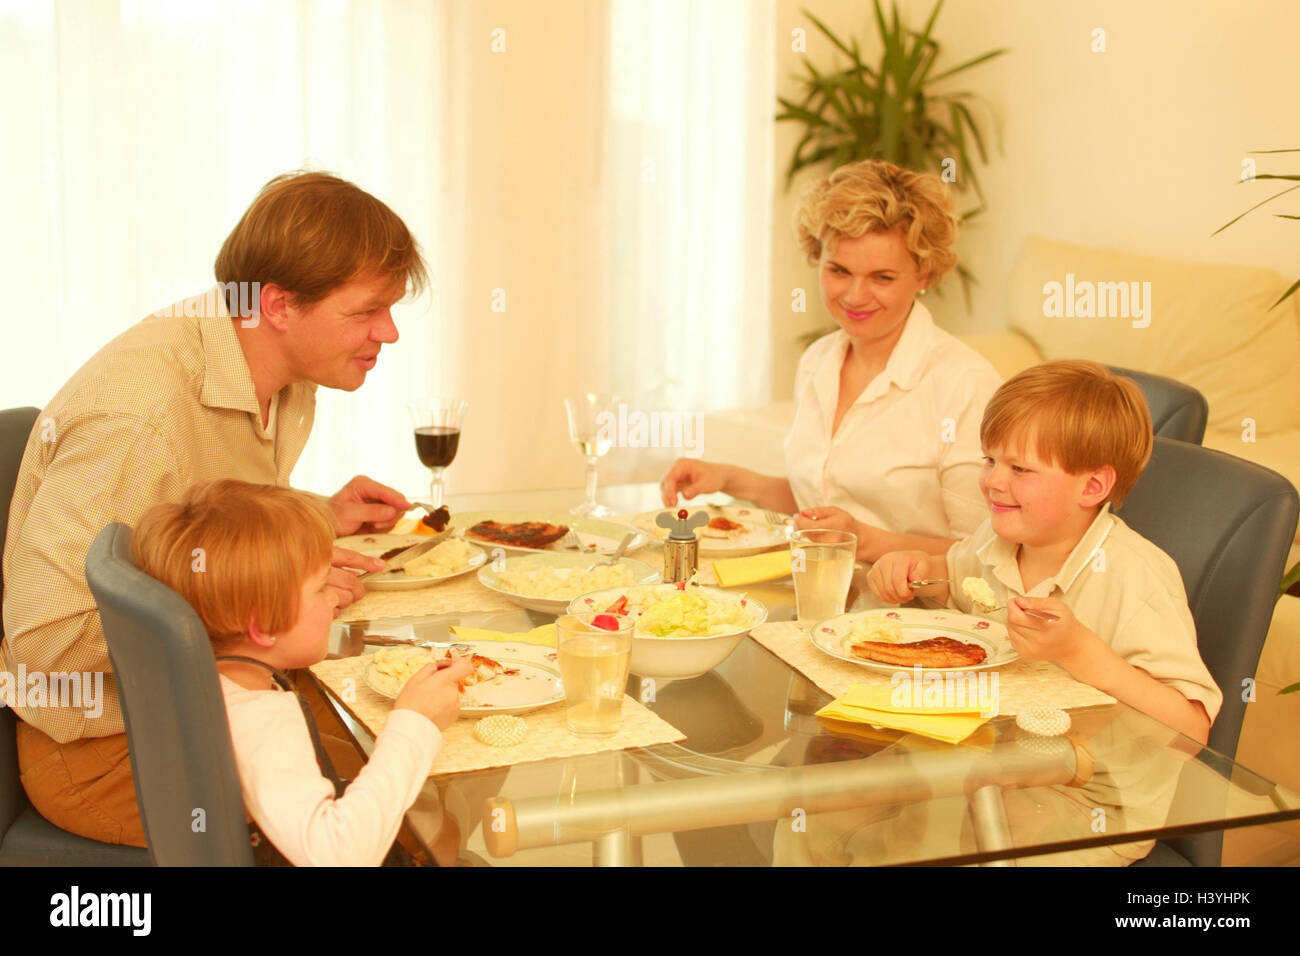 La famiglia, il pranzo insieme privatamente, genitori, figli, due, boy, ragazza, mezzogiorno, mangiare, nutrizione, cotoletta, purè di patate, piatto, cibo, pasto, cibo, mangiare, comportamento, istruzione, educazione, la vita di famiglia, l'armonia all'interno Foto Stock